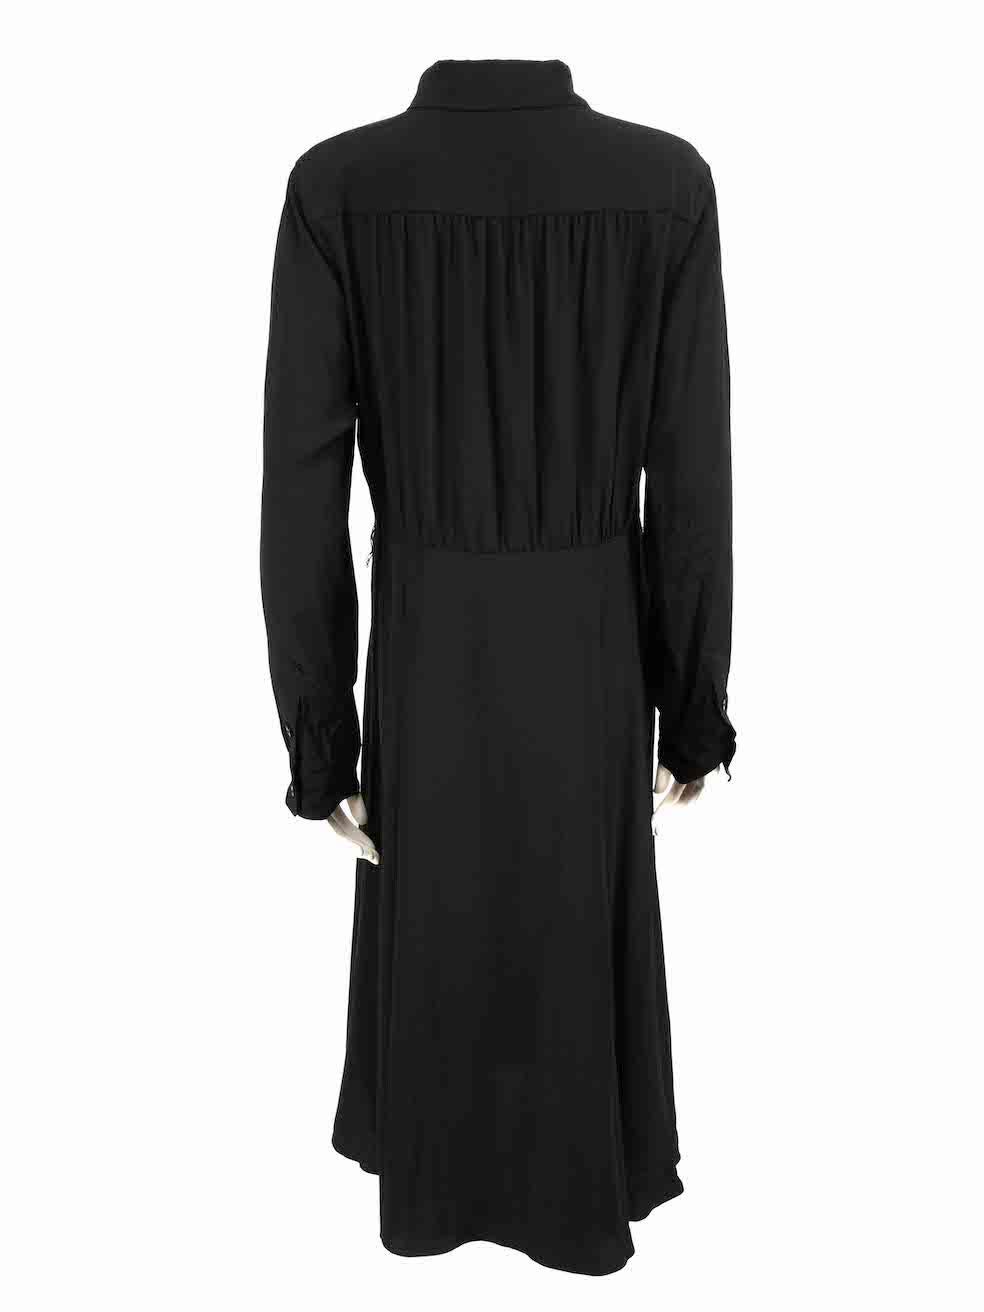 Diane Von Furstenberg Black Silk Mid Shirt Dress Size XL In Good Condition For Sale In London, GB